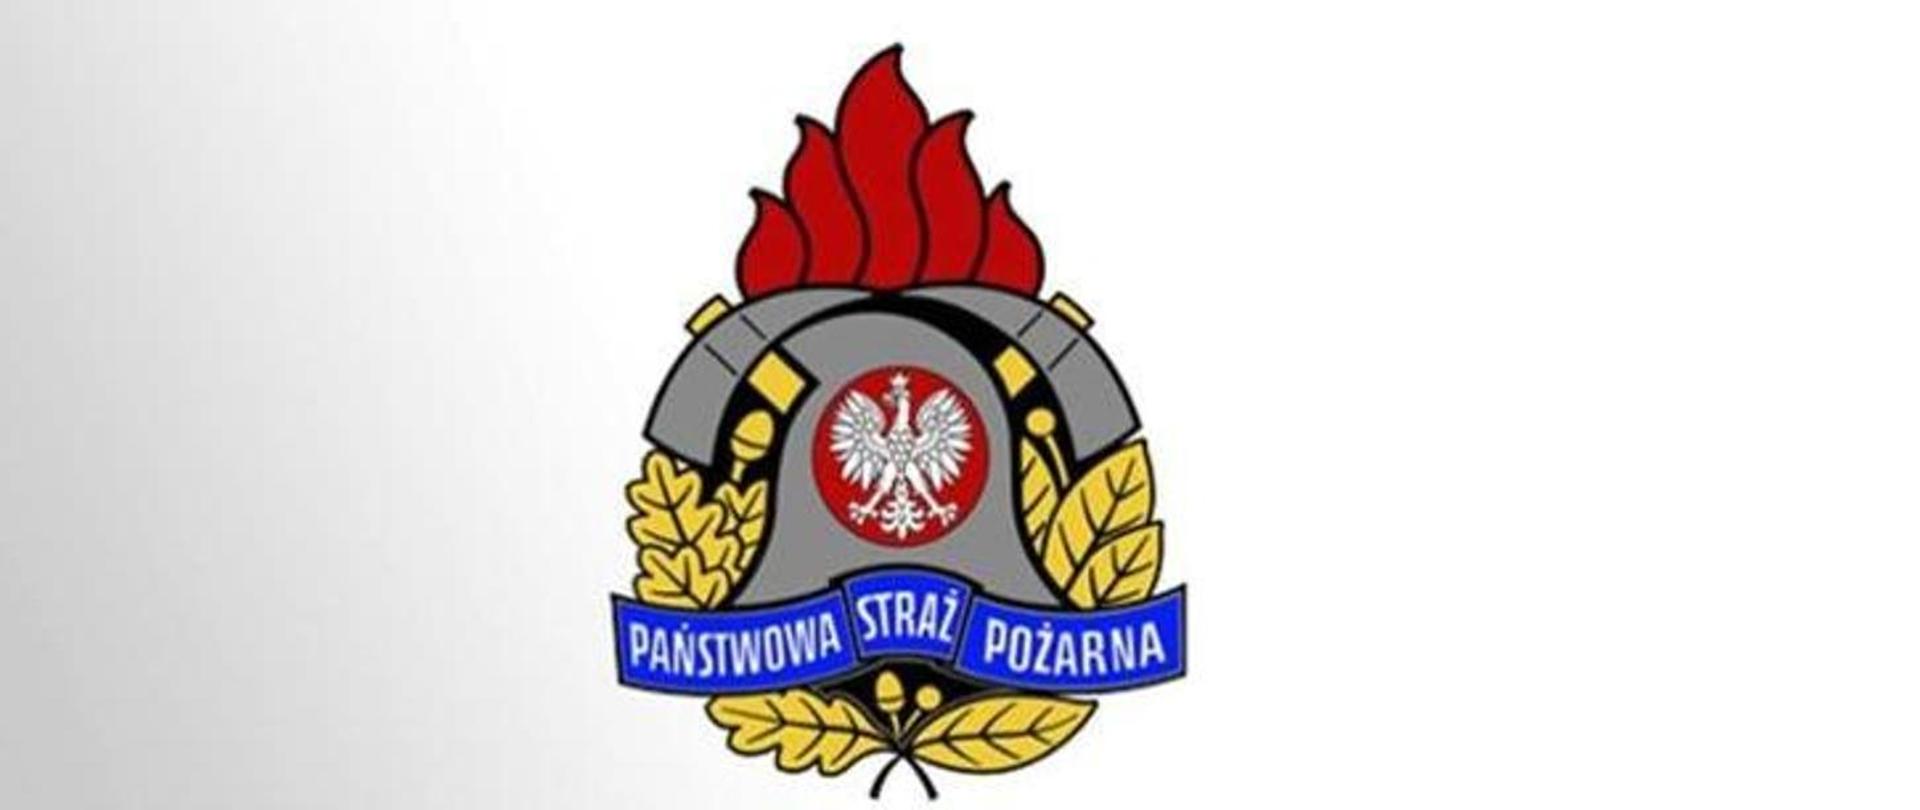 na zdjęciu znajduje się logo Państwowej Straży Pożarnej